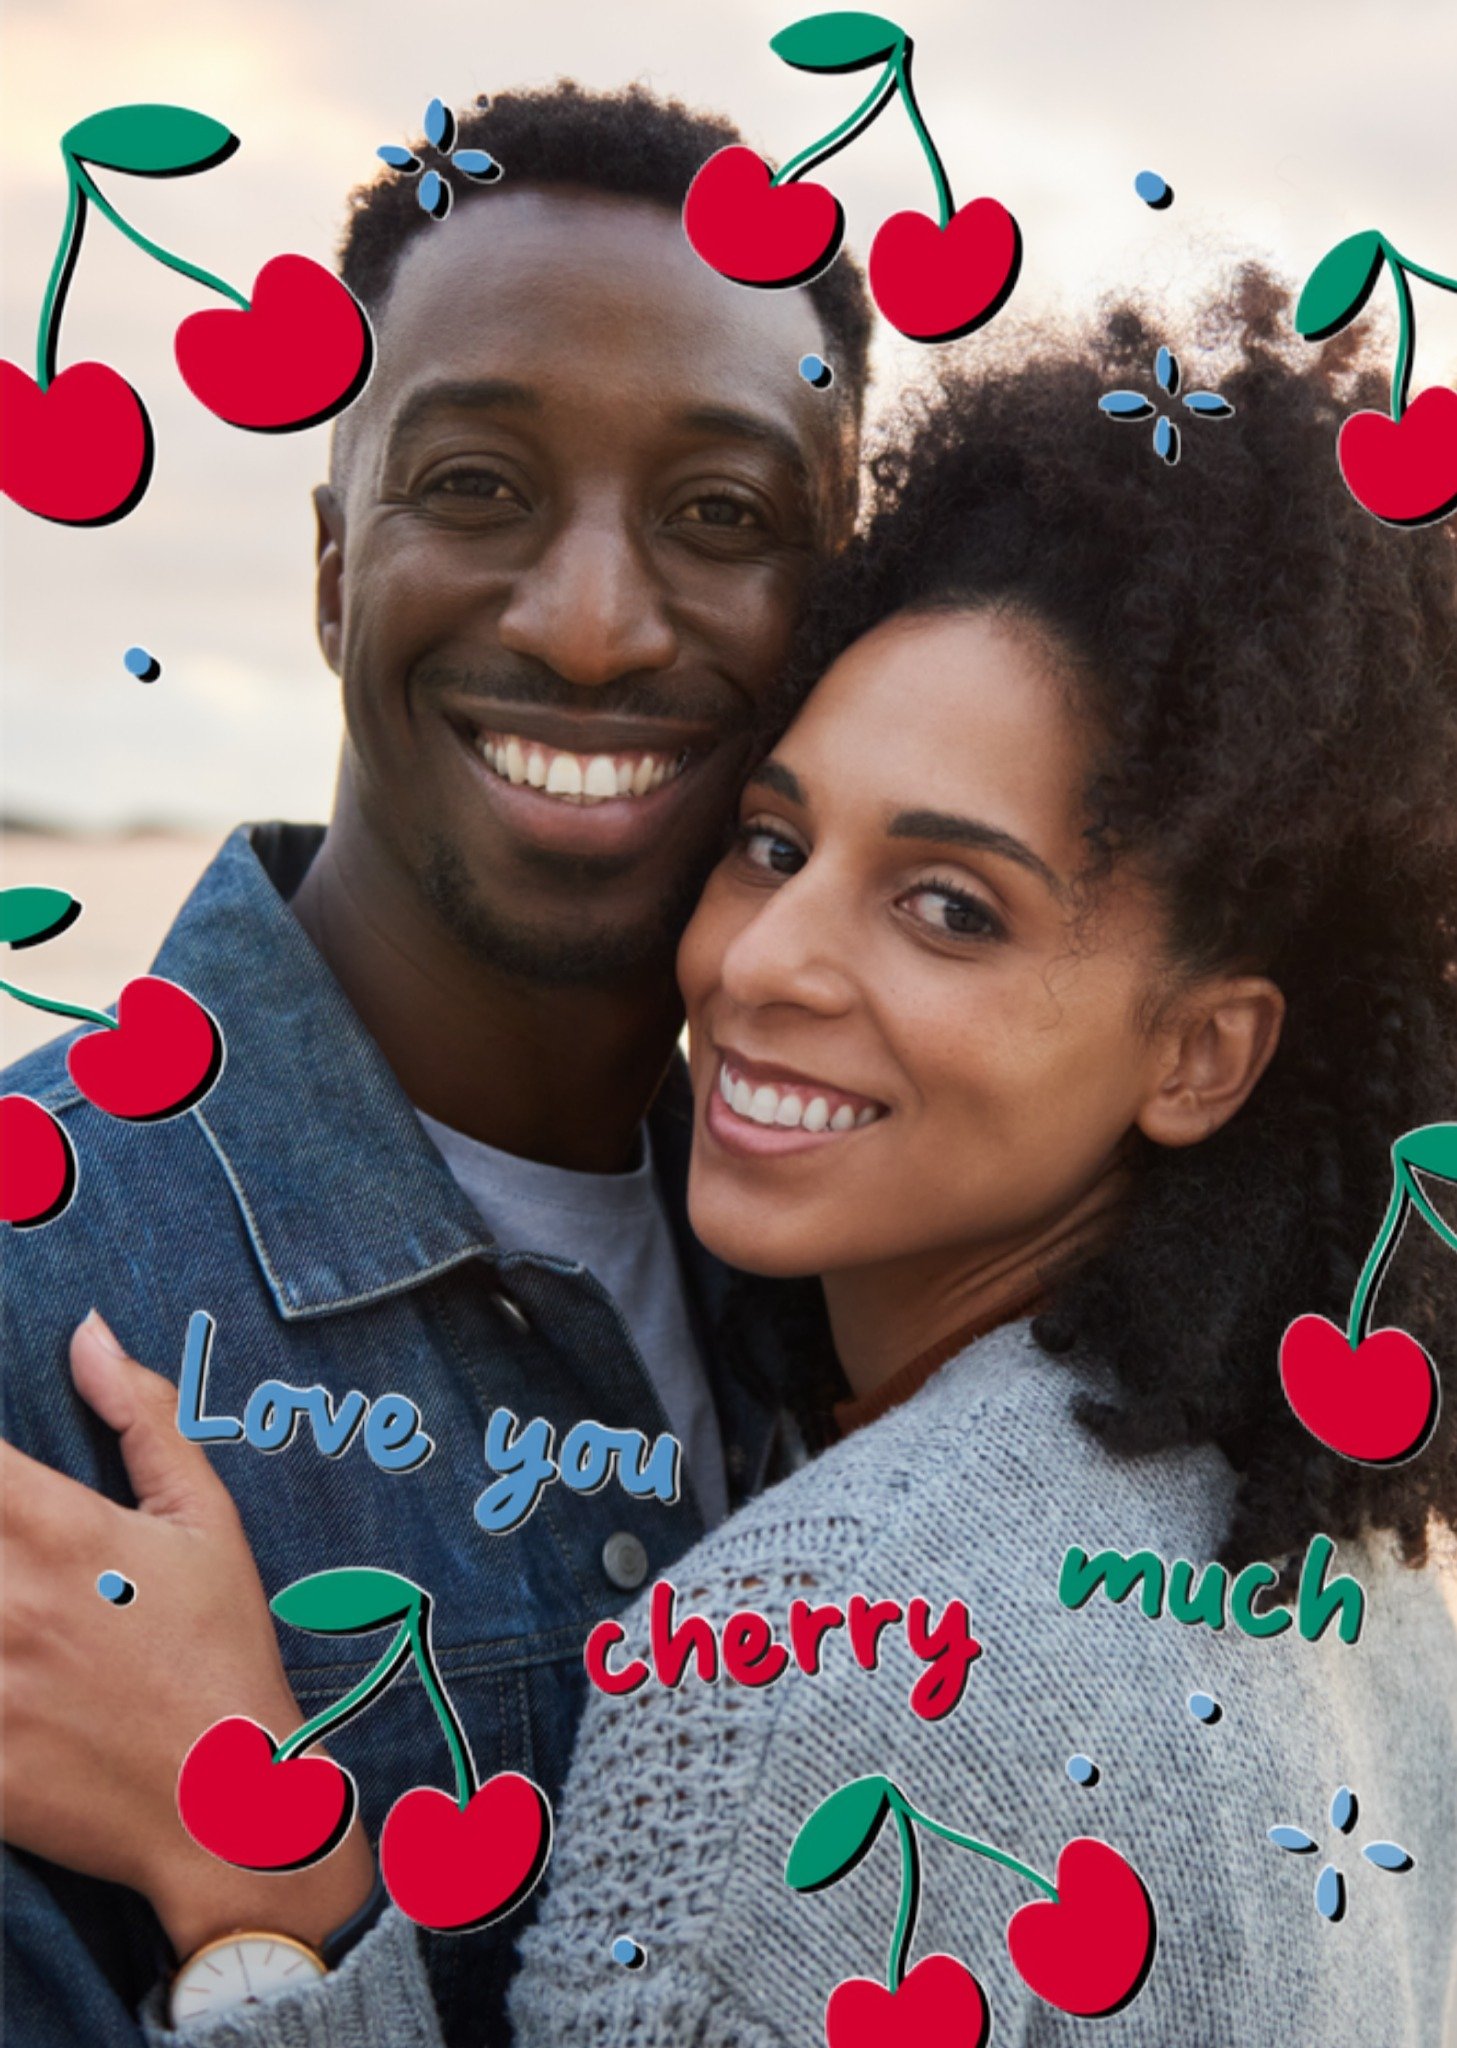 Valentijnskaart - Love you cherry much